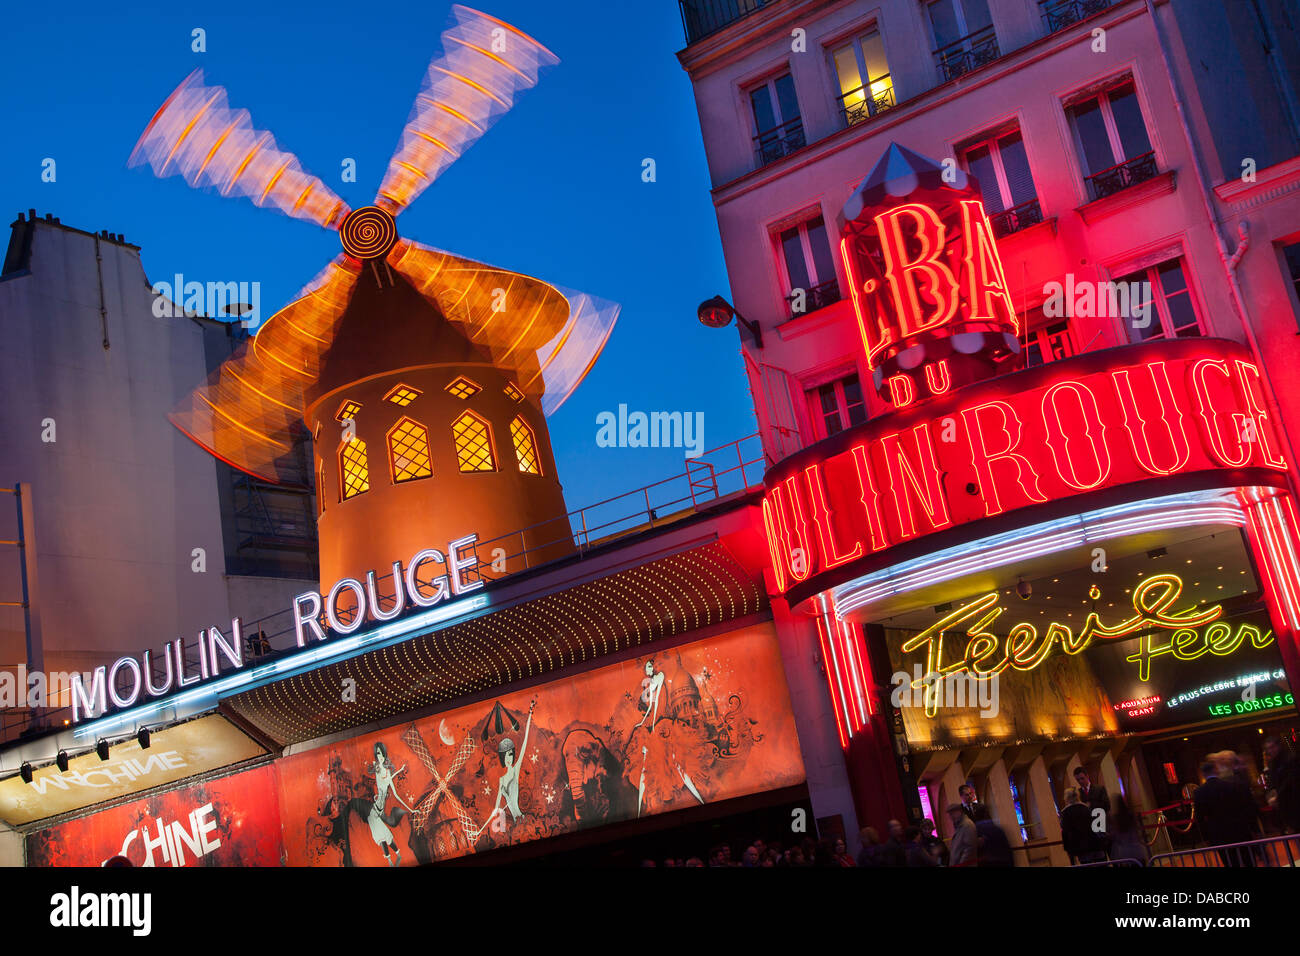 Moulin Rouge (1889), célèbre Cabaret, Pigalle, Paris France Banque D'Images